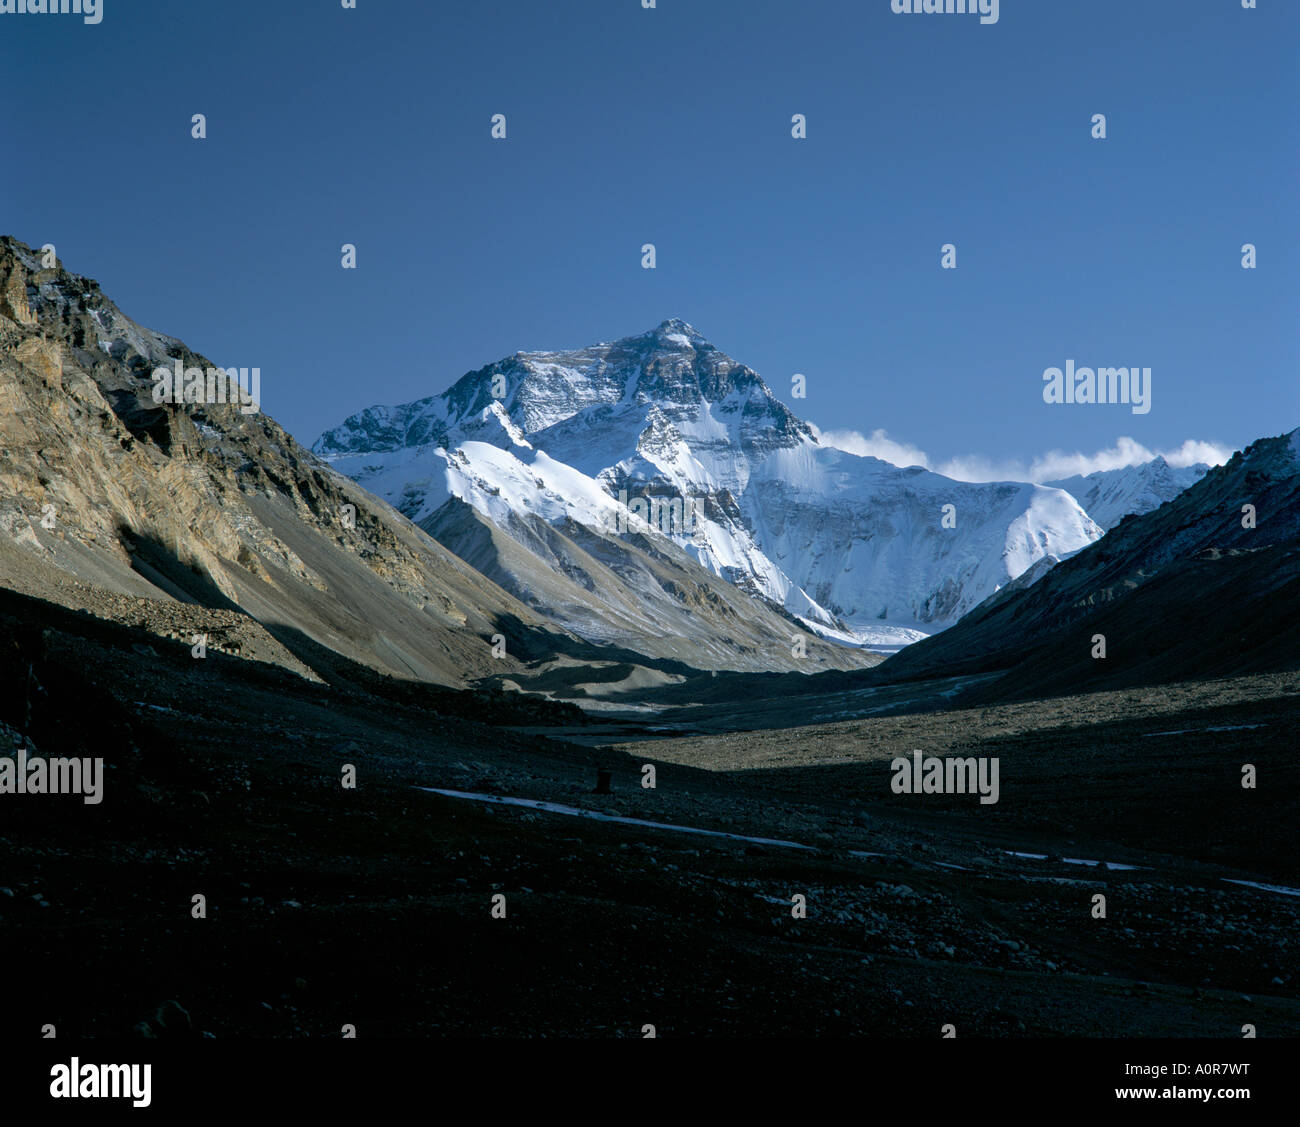 North Face Mount Everest 8848m Himalayas Tibet China Asia Stock Photo